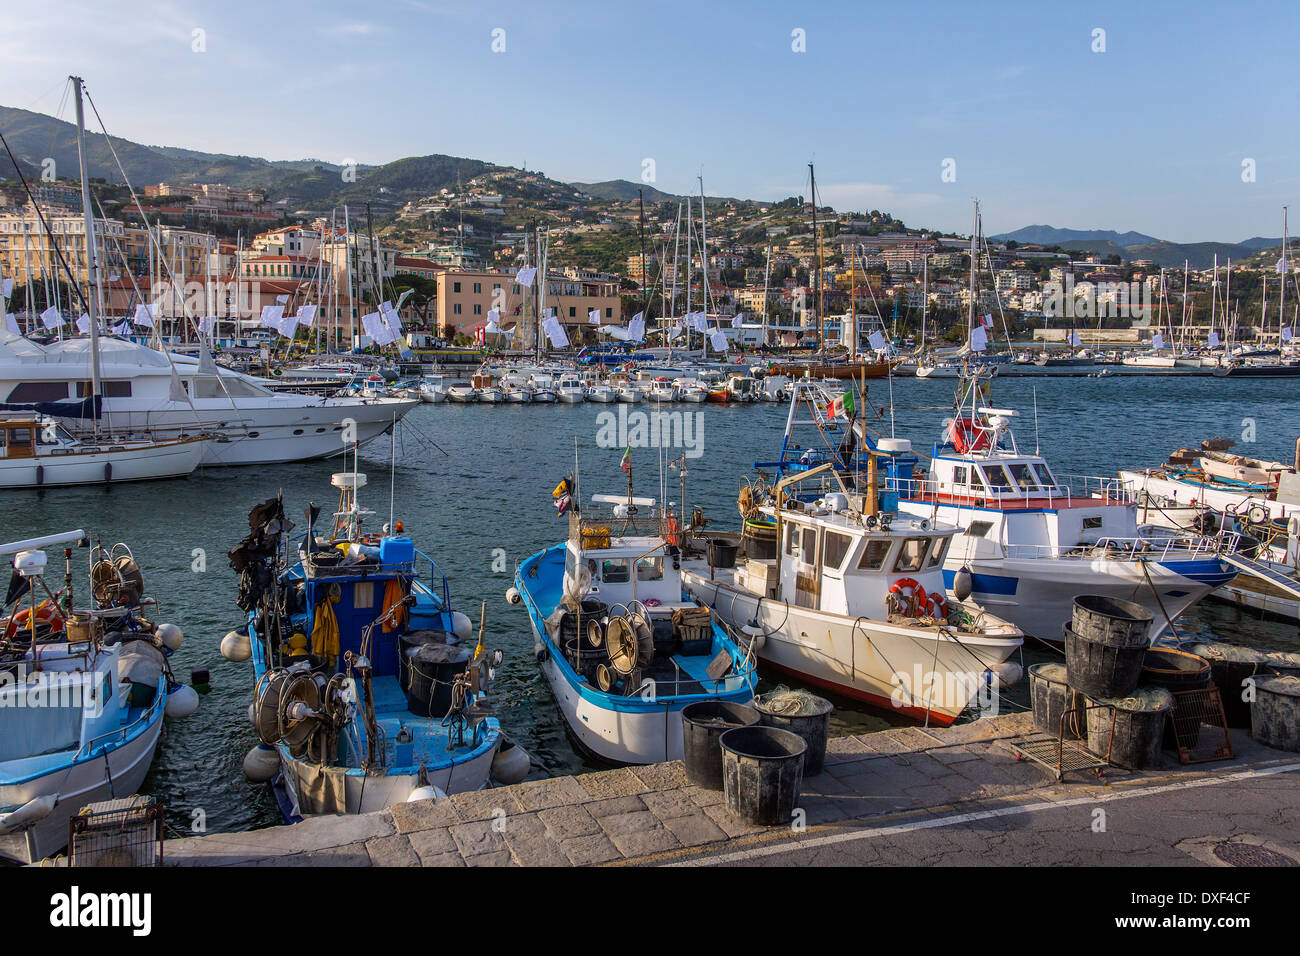 El puerto en el Mediterráneo resort de San Remo (Sanremo) en la costa noroeste de Italia. Foto de stock